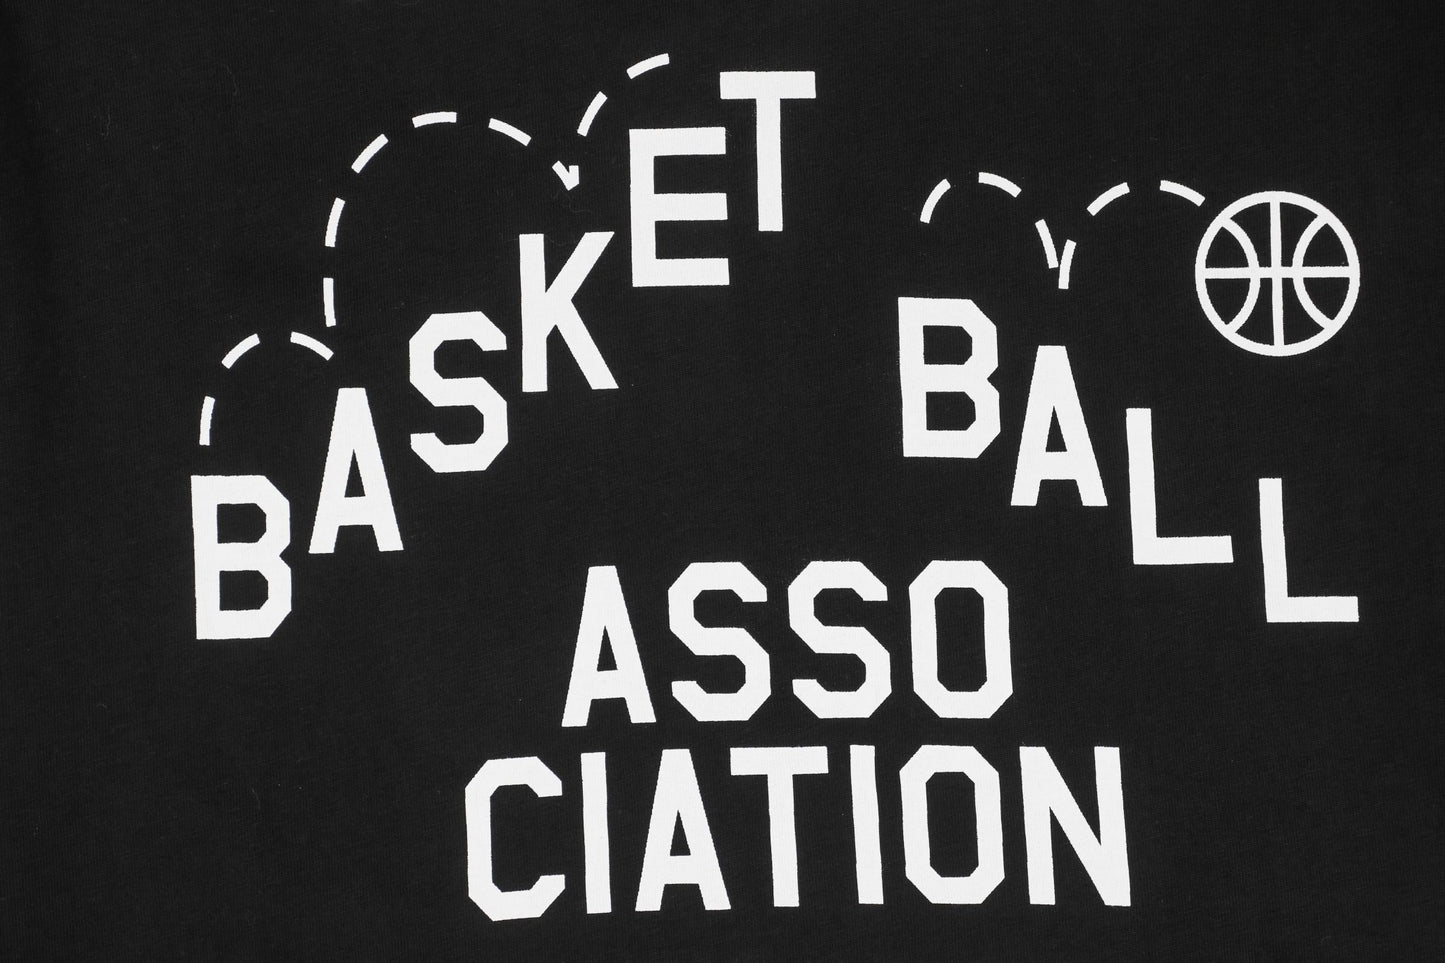 LV X NBA Black T-Shirt